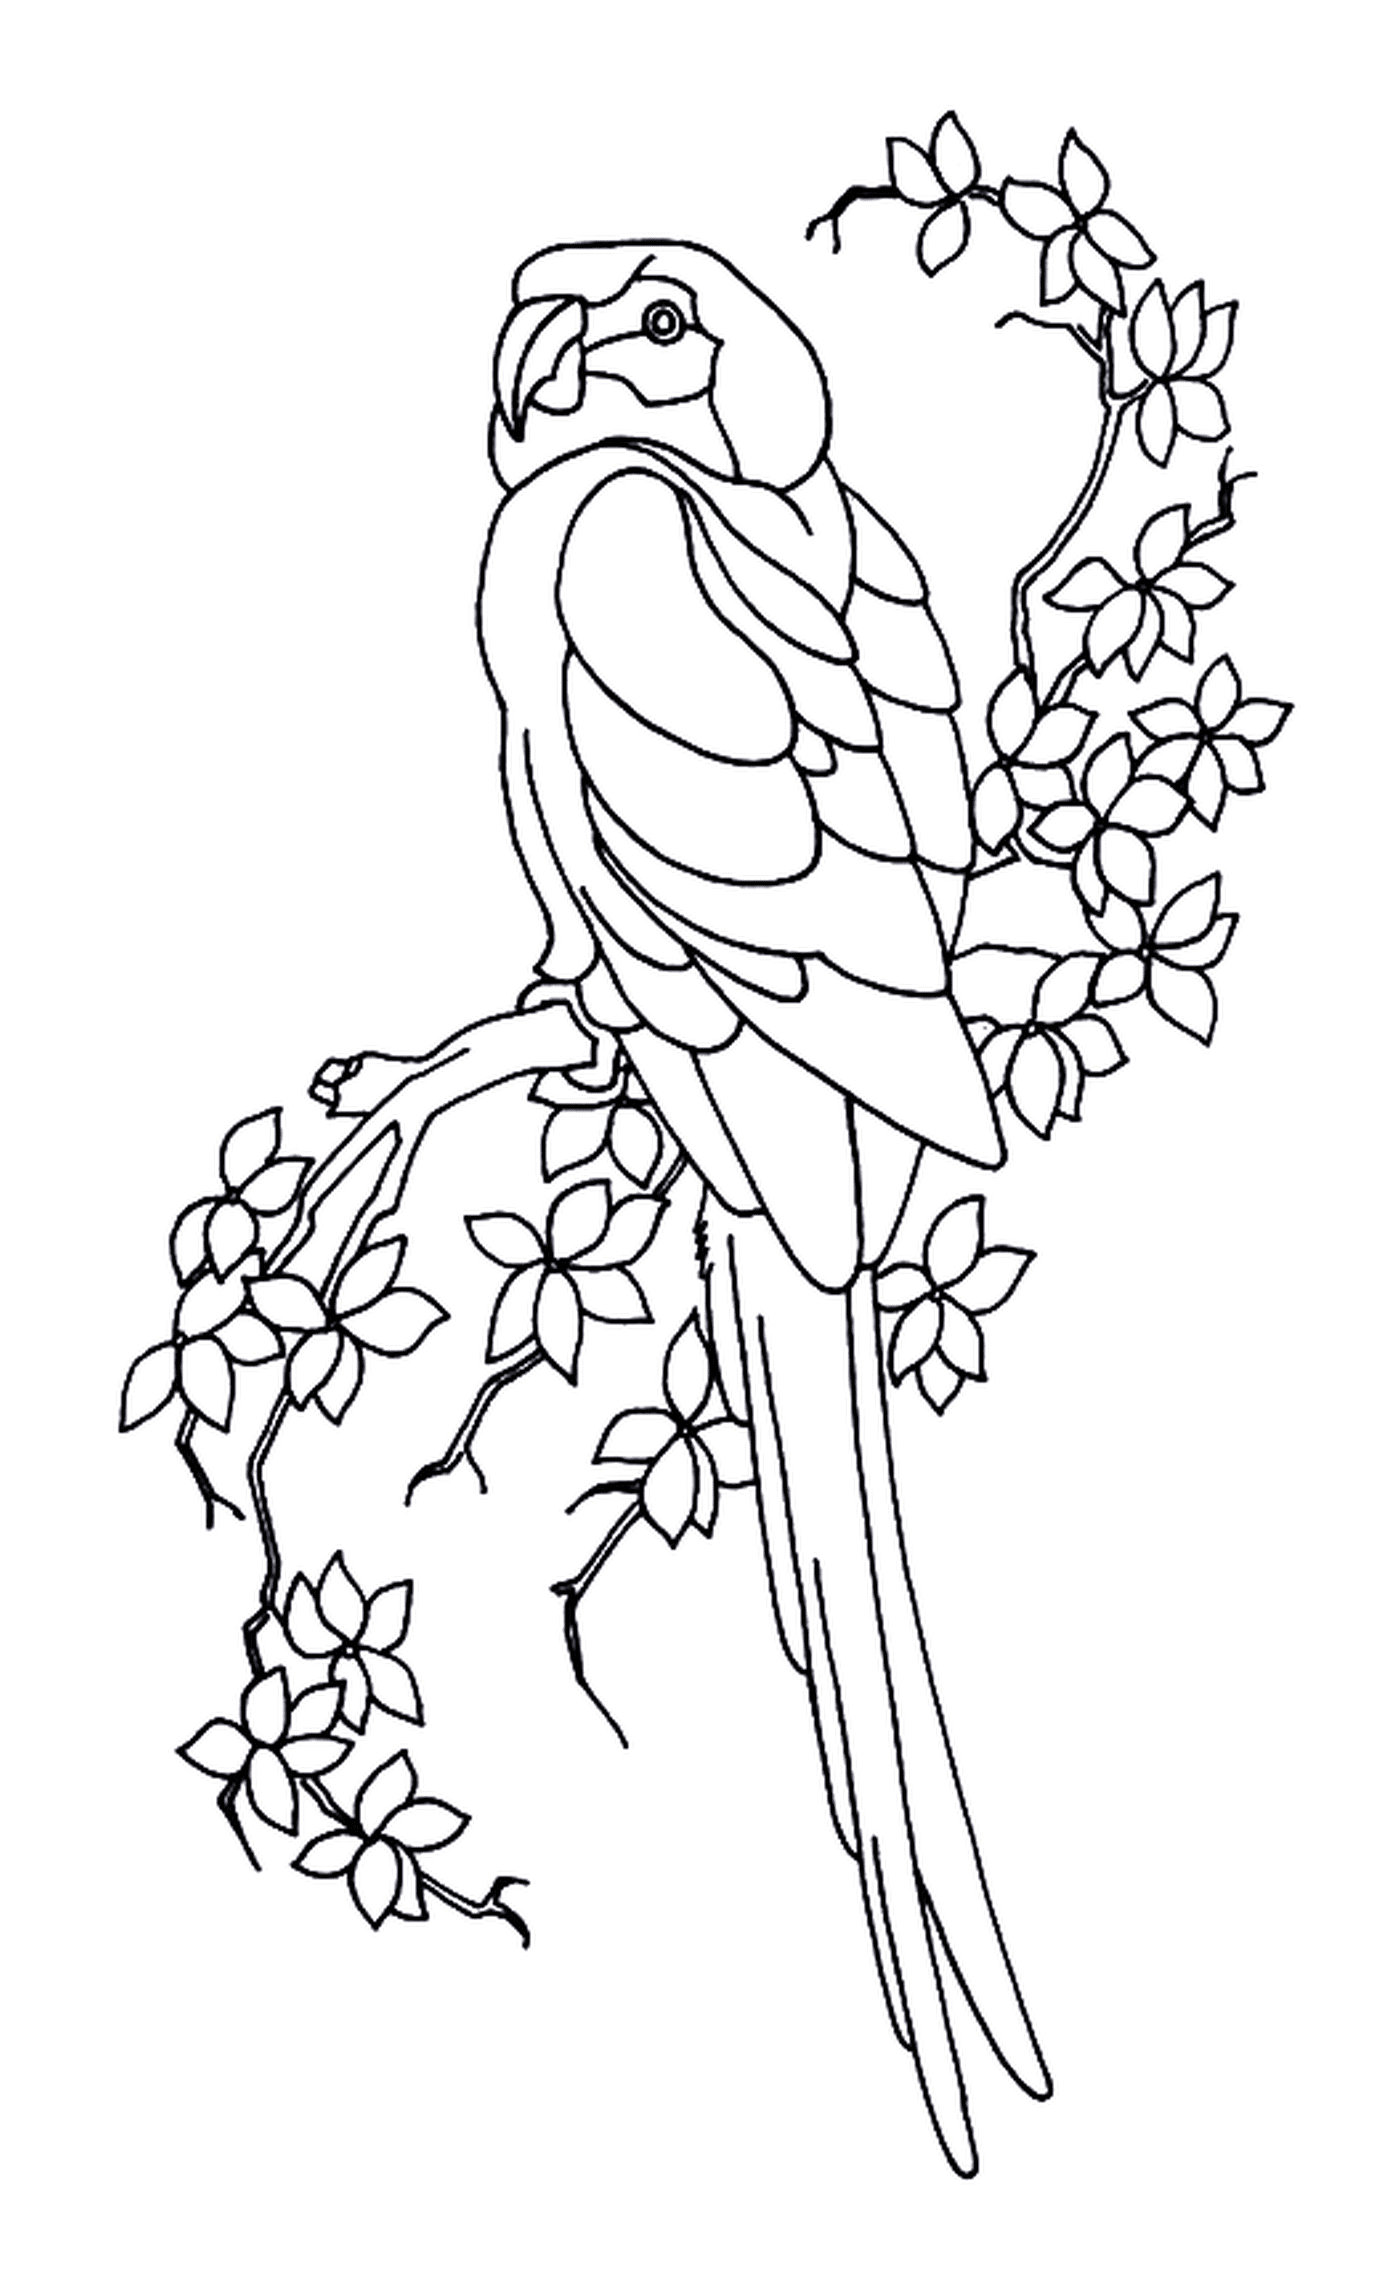   Perroquet et feuilles, oiseau perché sur une branche d'arbre 